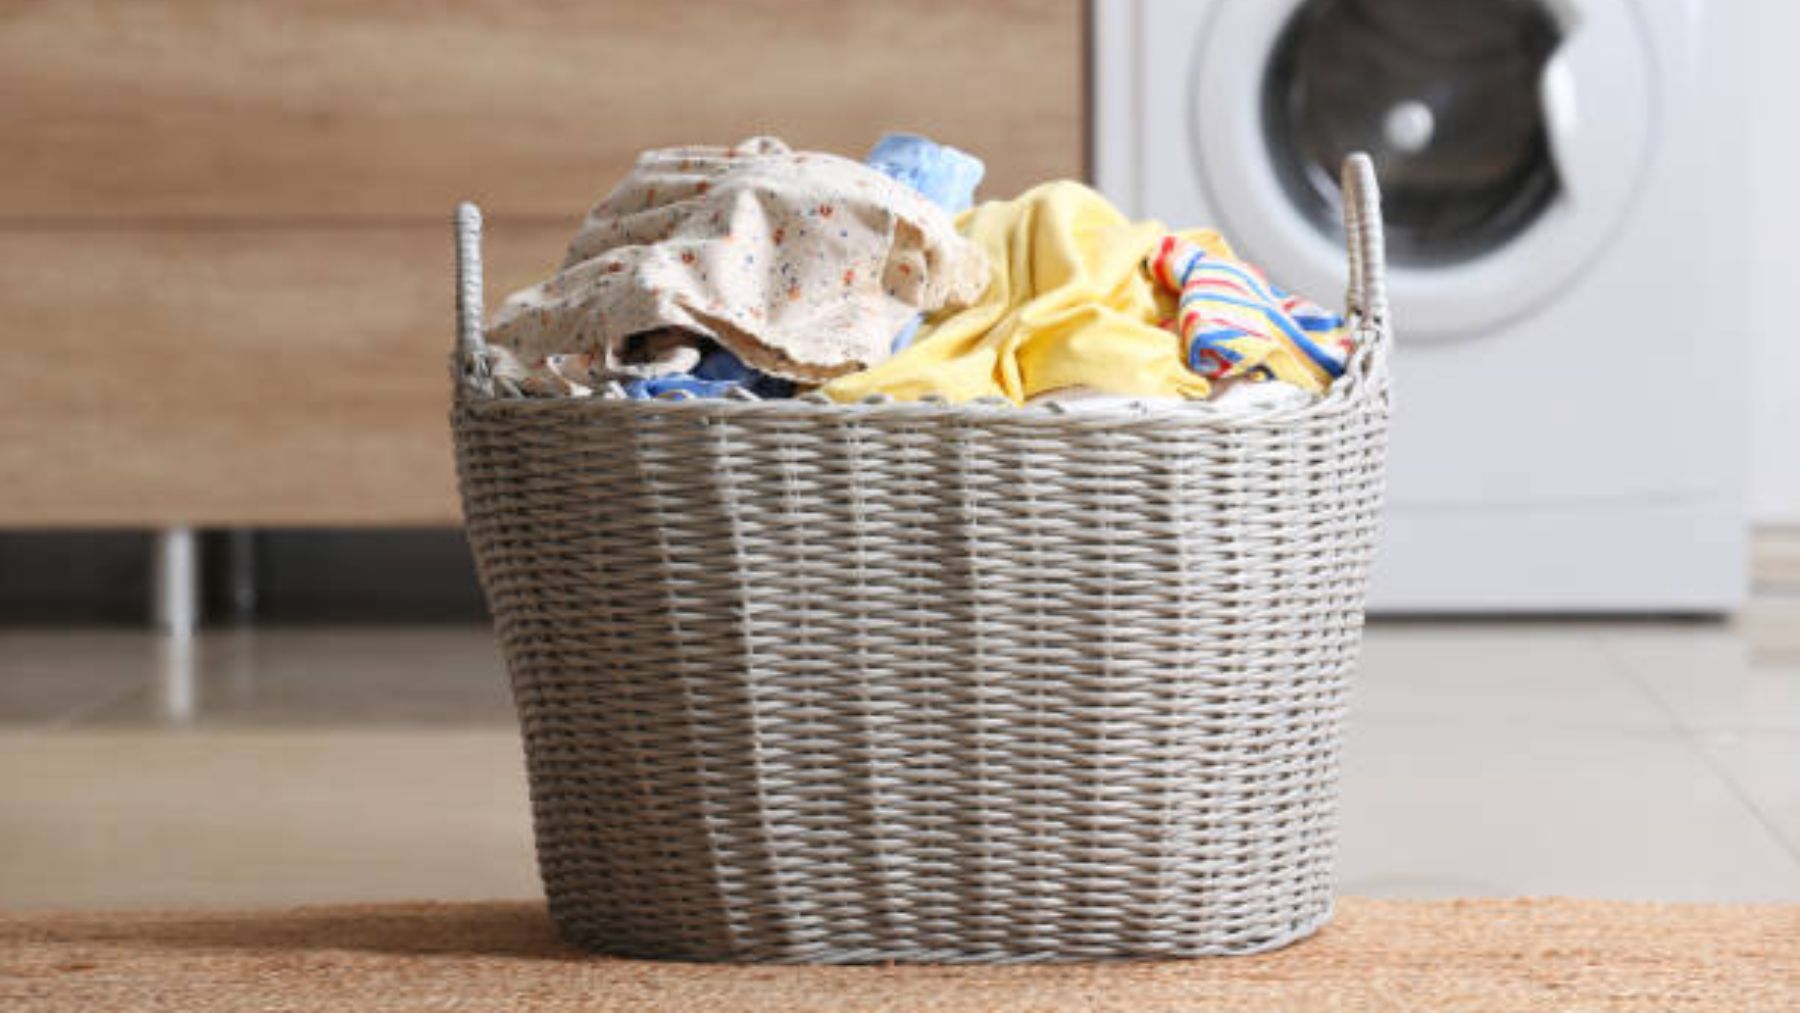 Cestos de ropa sucia para separar la ropa limpia y mantener la